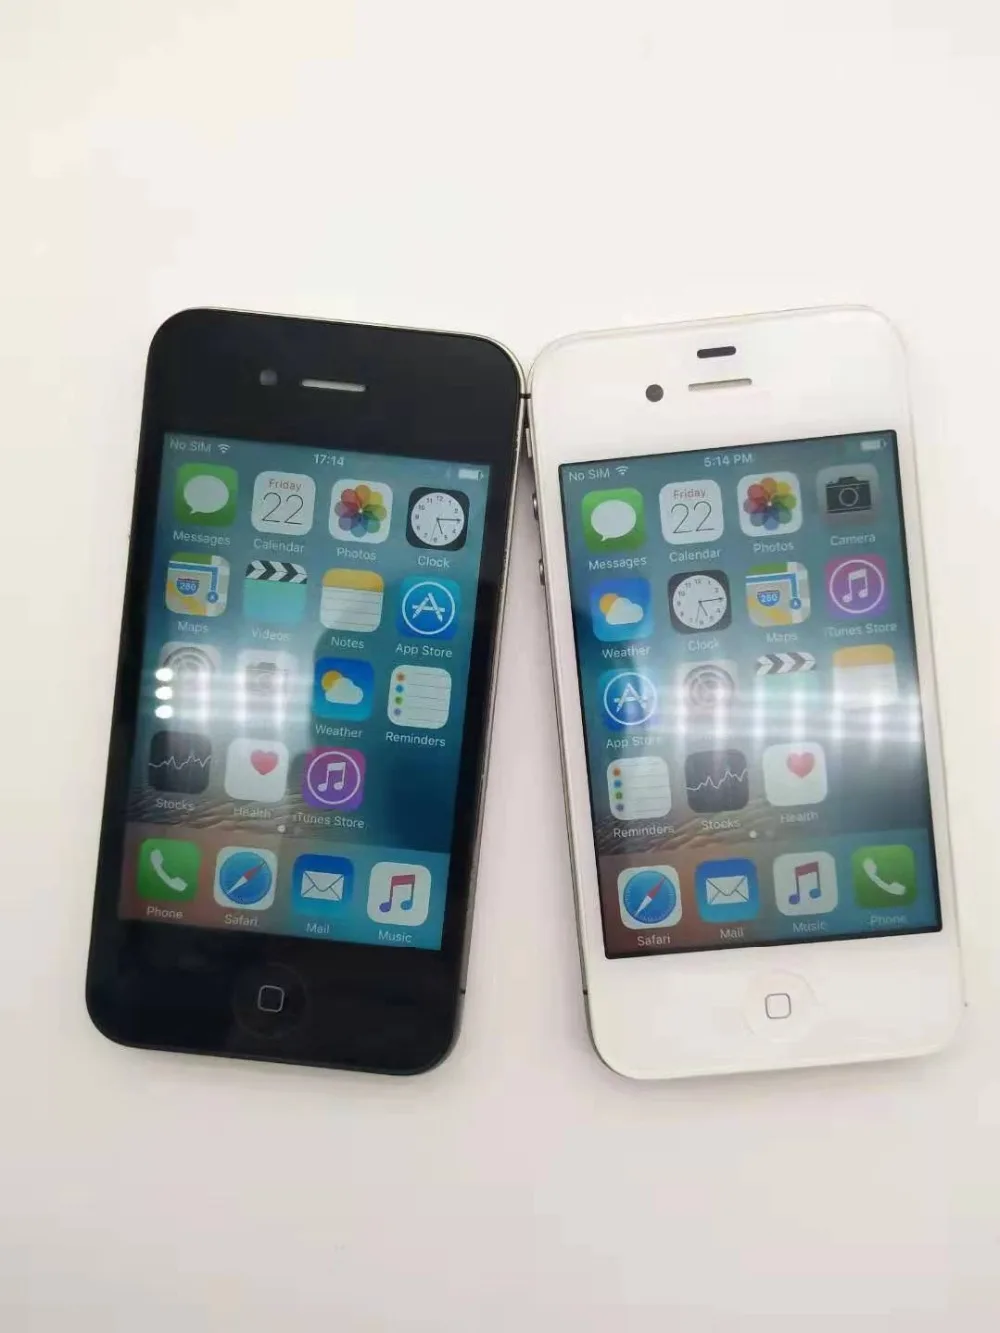 IPhone4S оригинальный заводской разблокированный Apple iPhone 4S IOS Dual Core 8MP WI-FI WCDMA мобильный телефон сенсорный iCloud Восстановленное